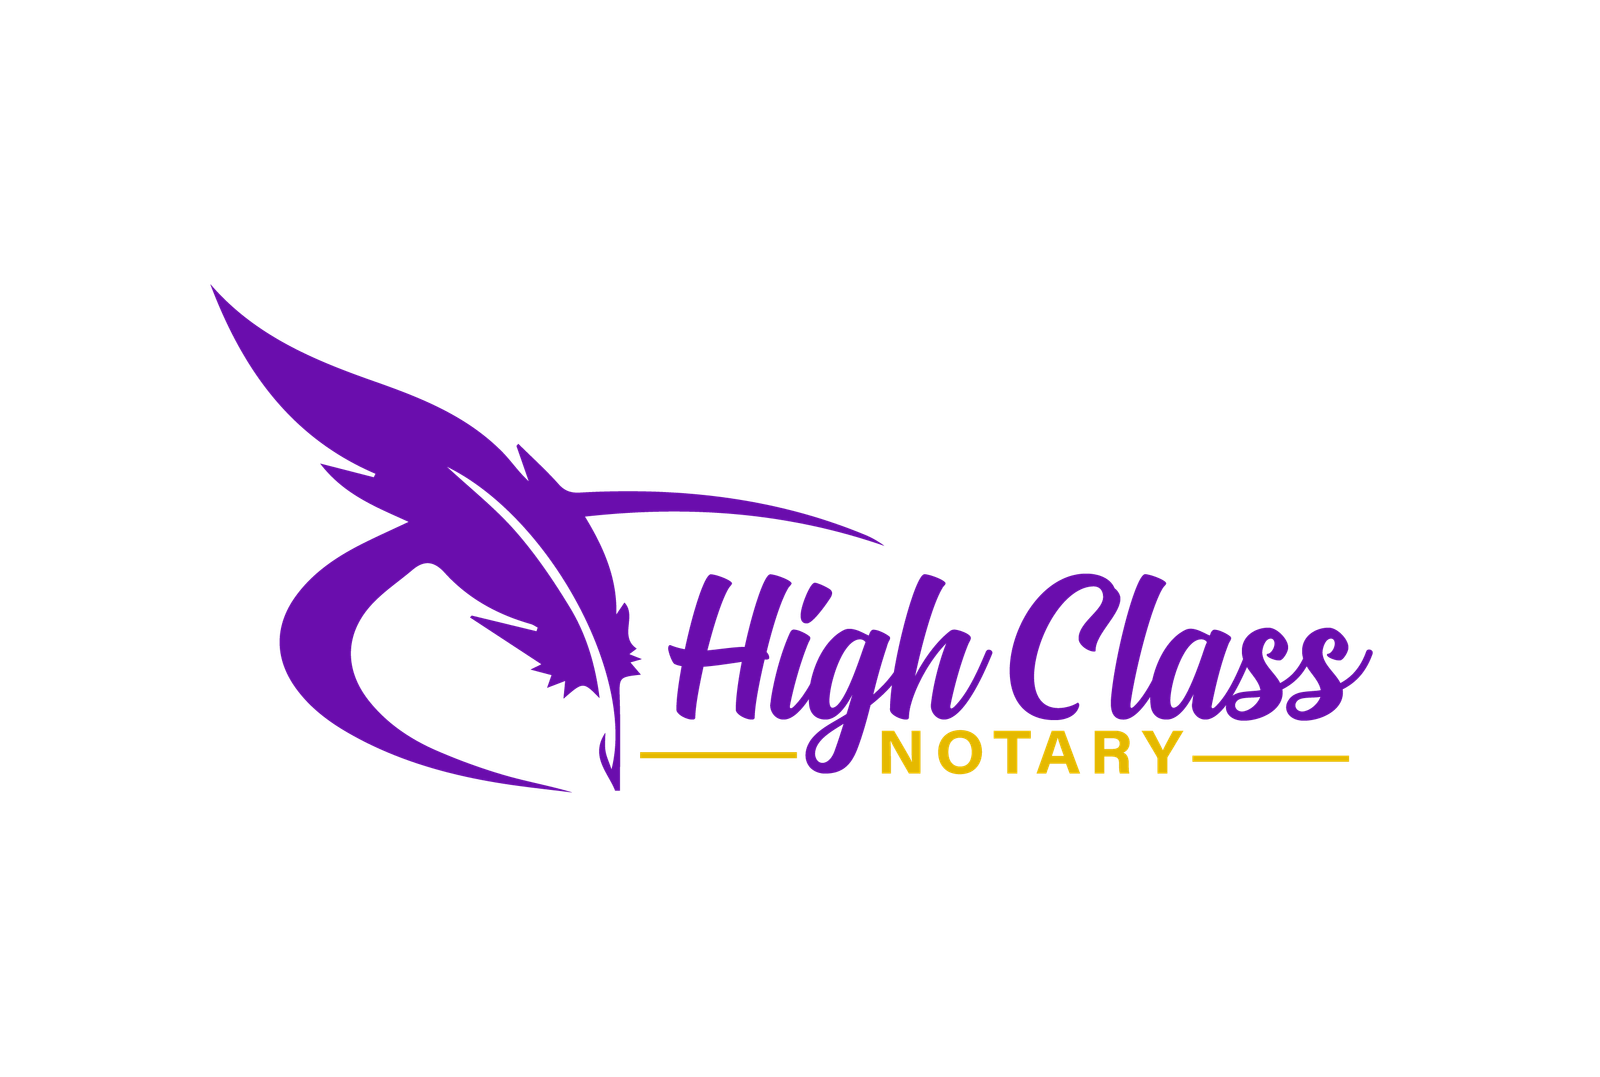 High Class Notary